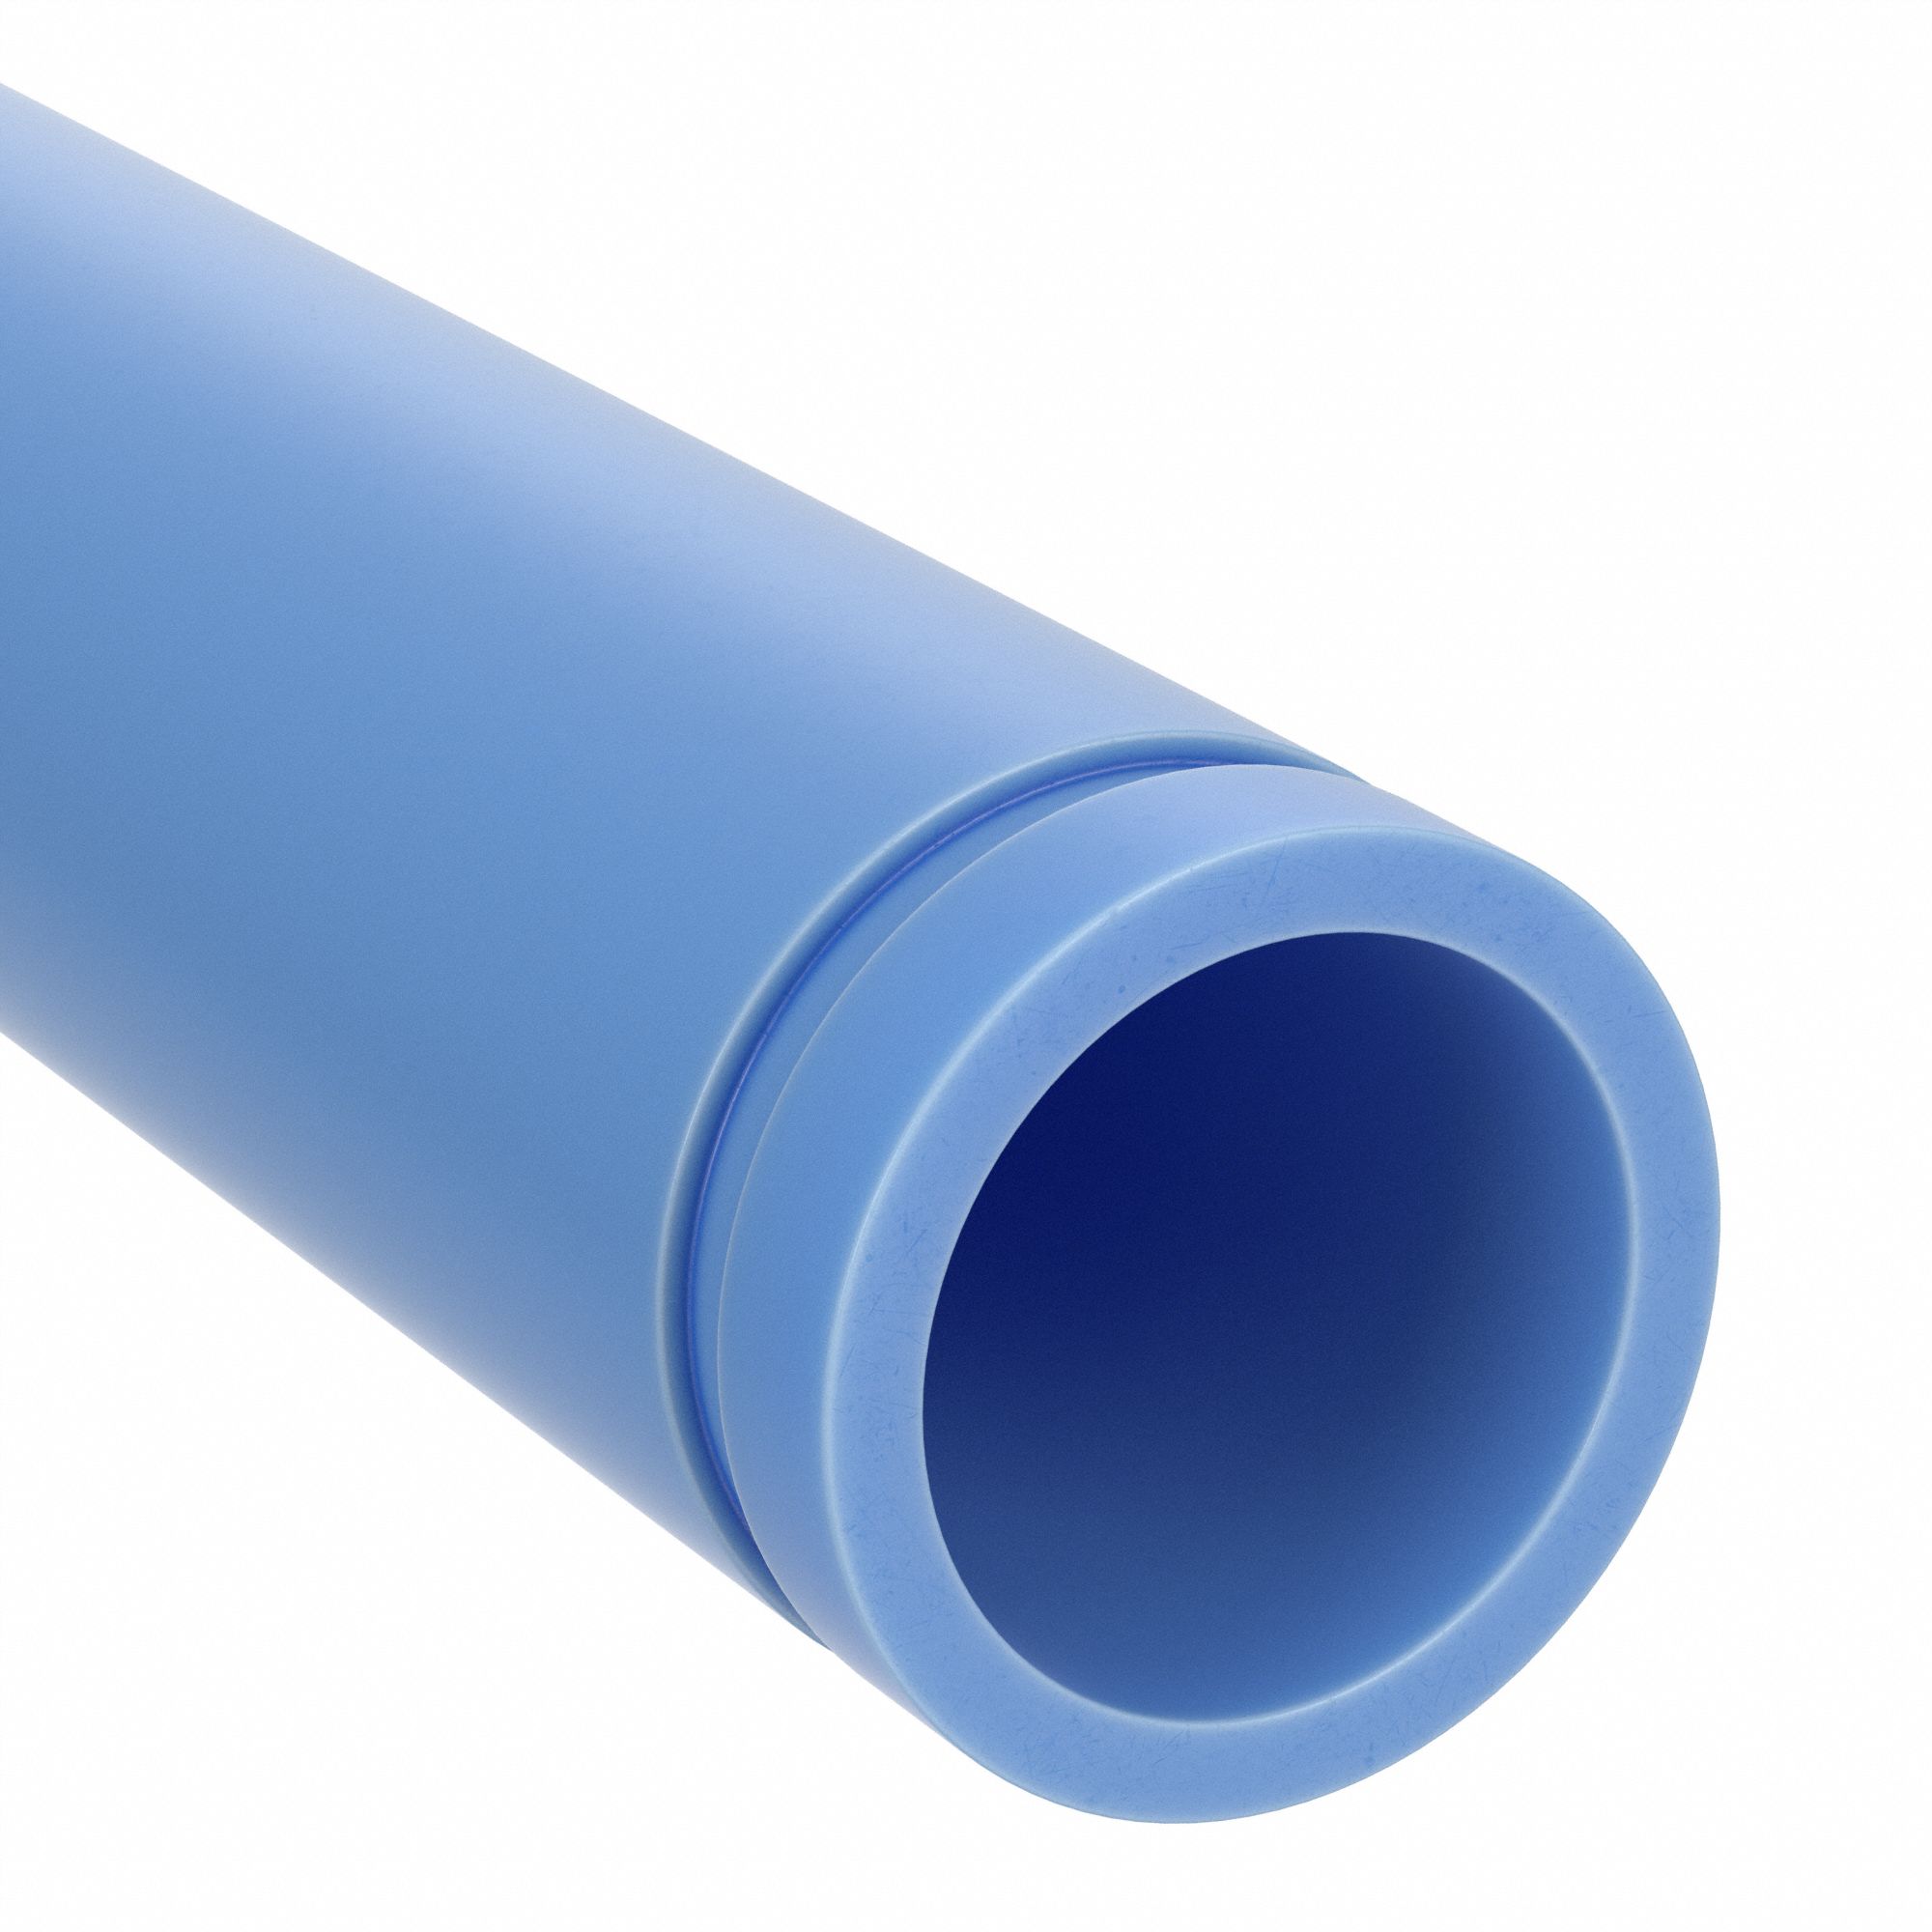 polypropylene pipe